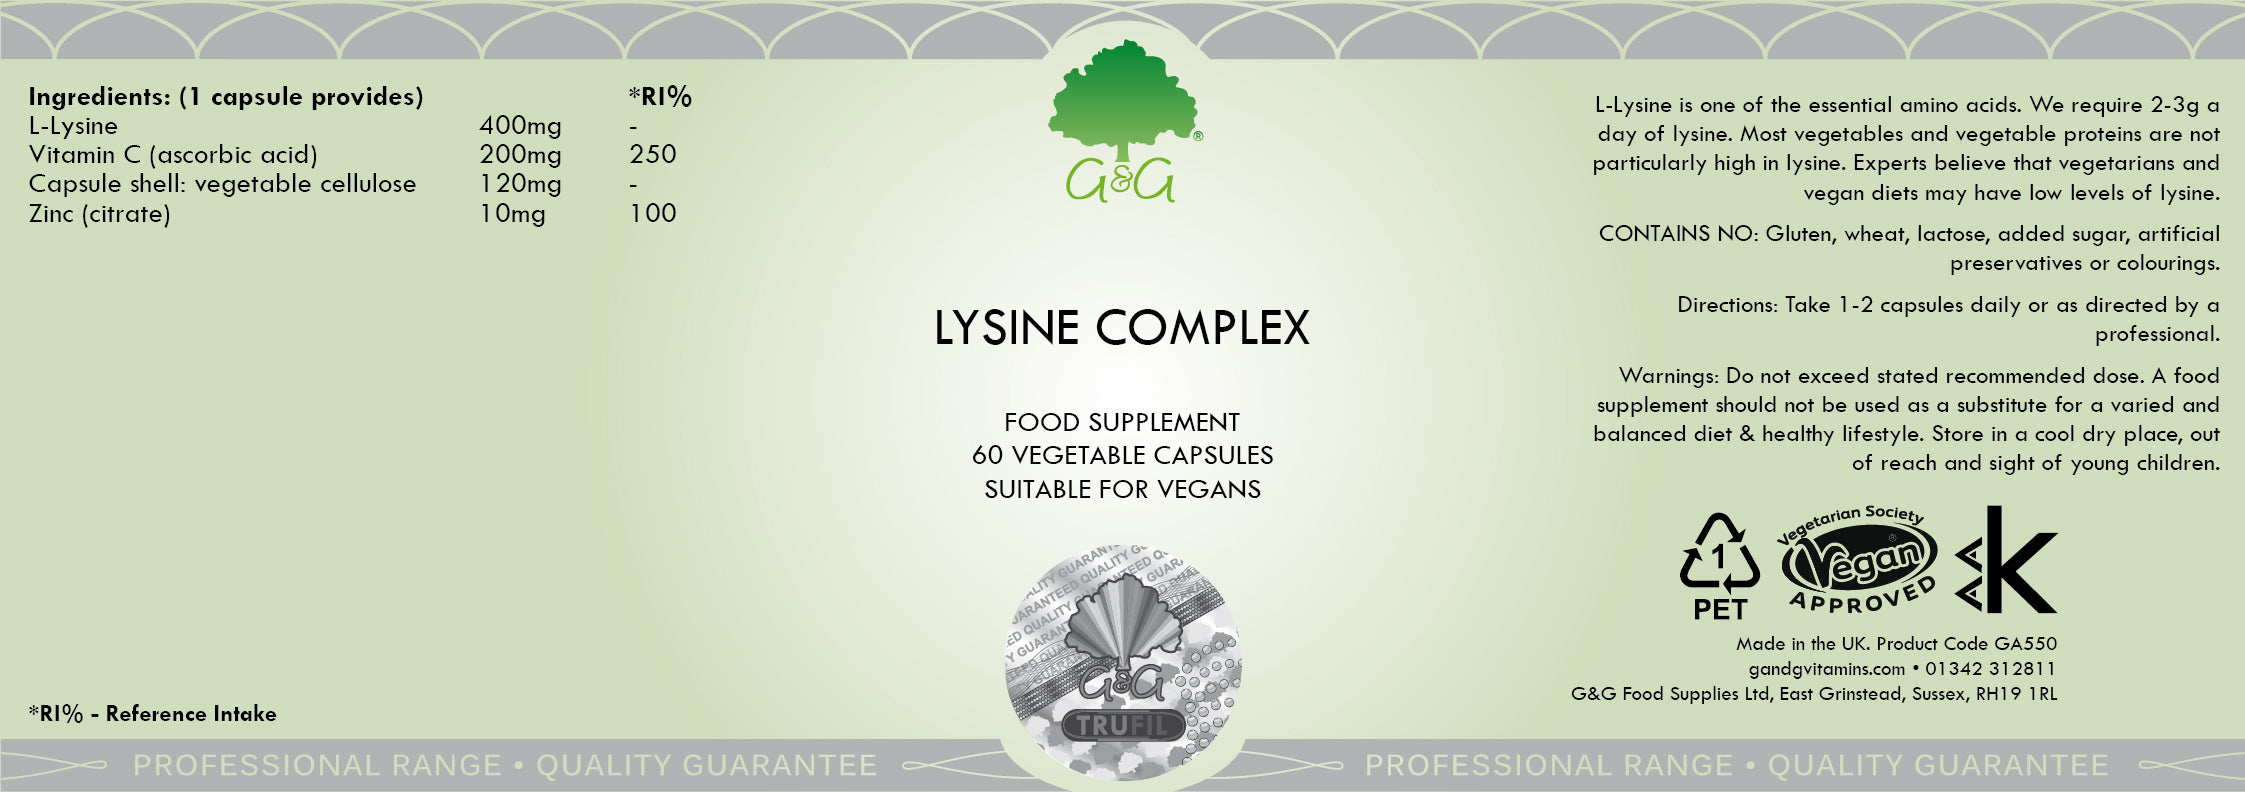 G&G Vitamins Lysine Complex 60's